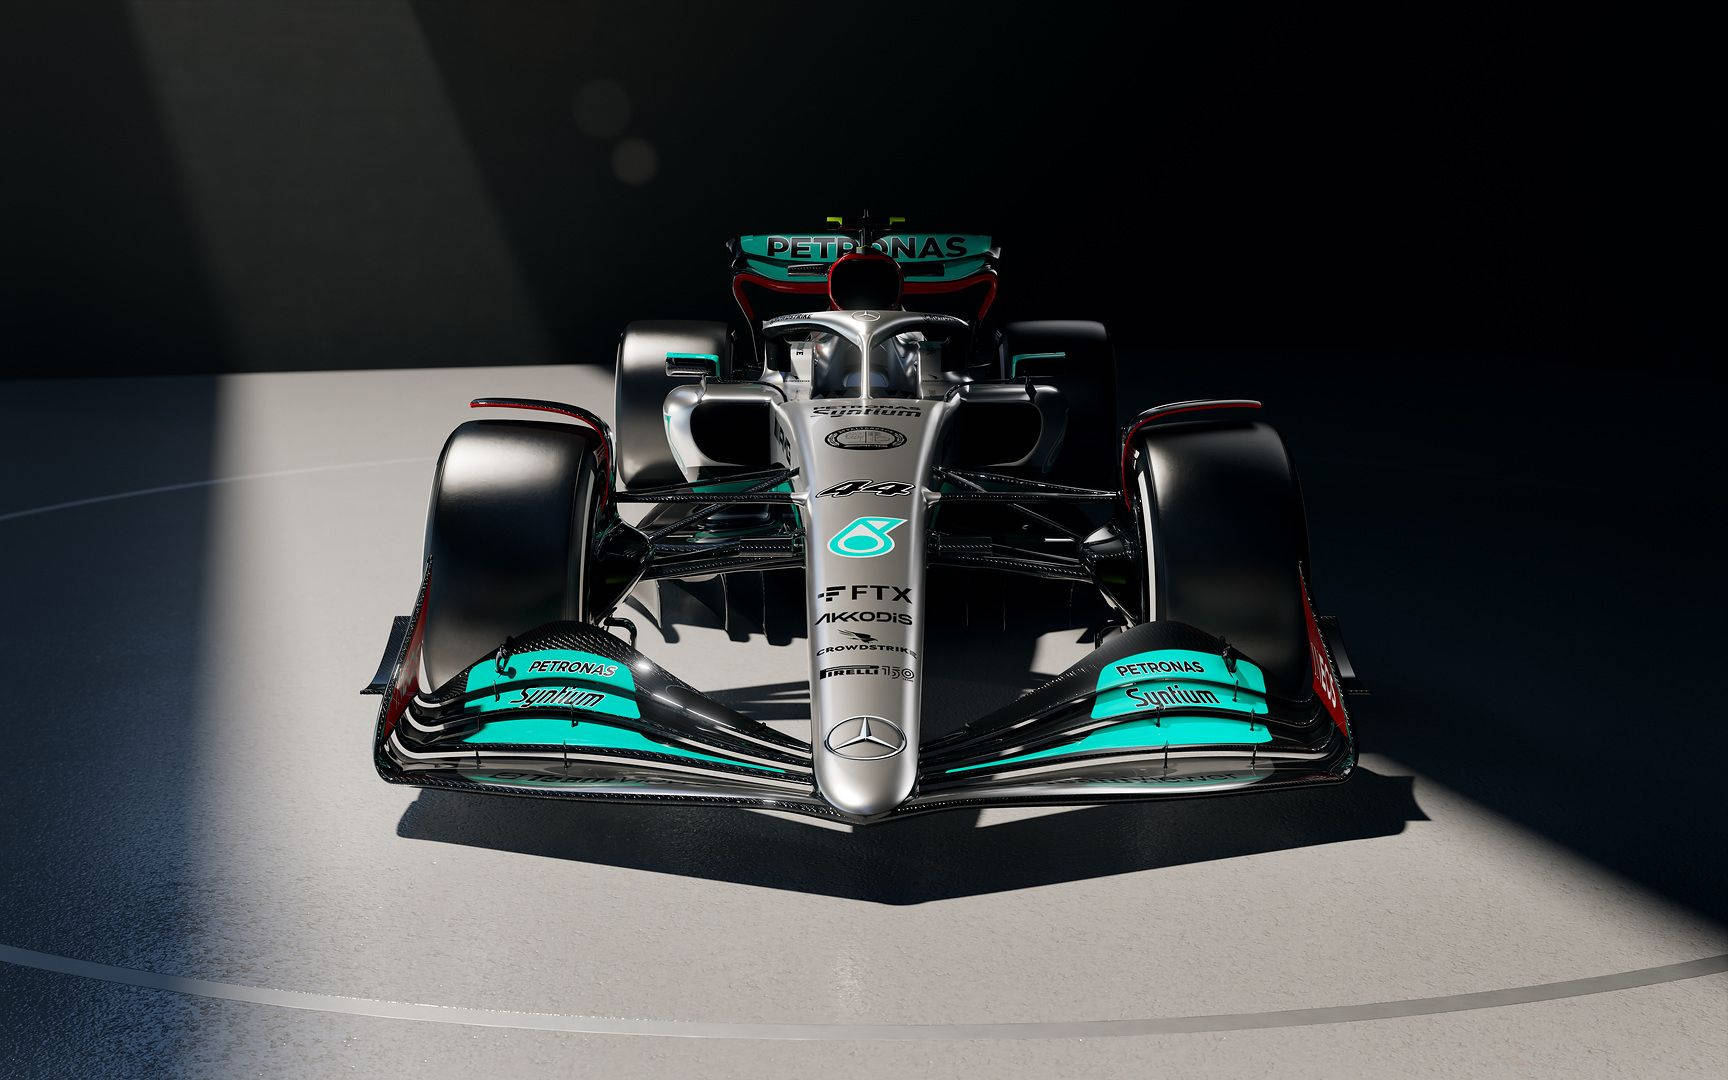 Erlebensie Ihr Formel-1-rennerlebnis Überall Mit Dem Mercedes-f1-themen-iphone. Wallpaper